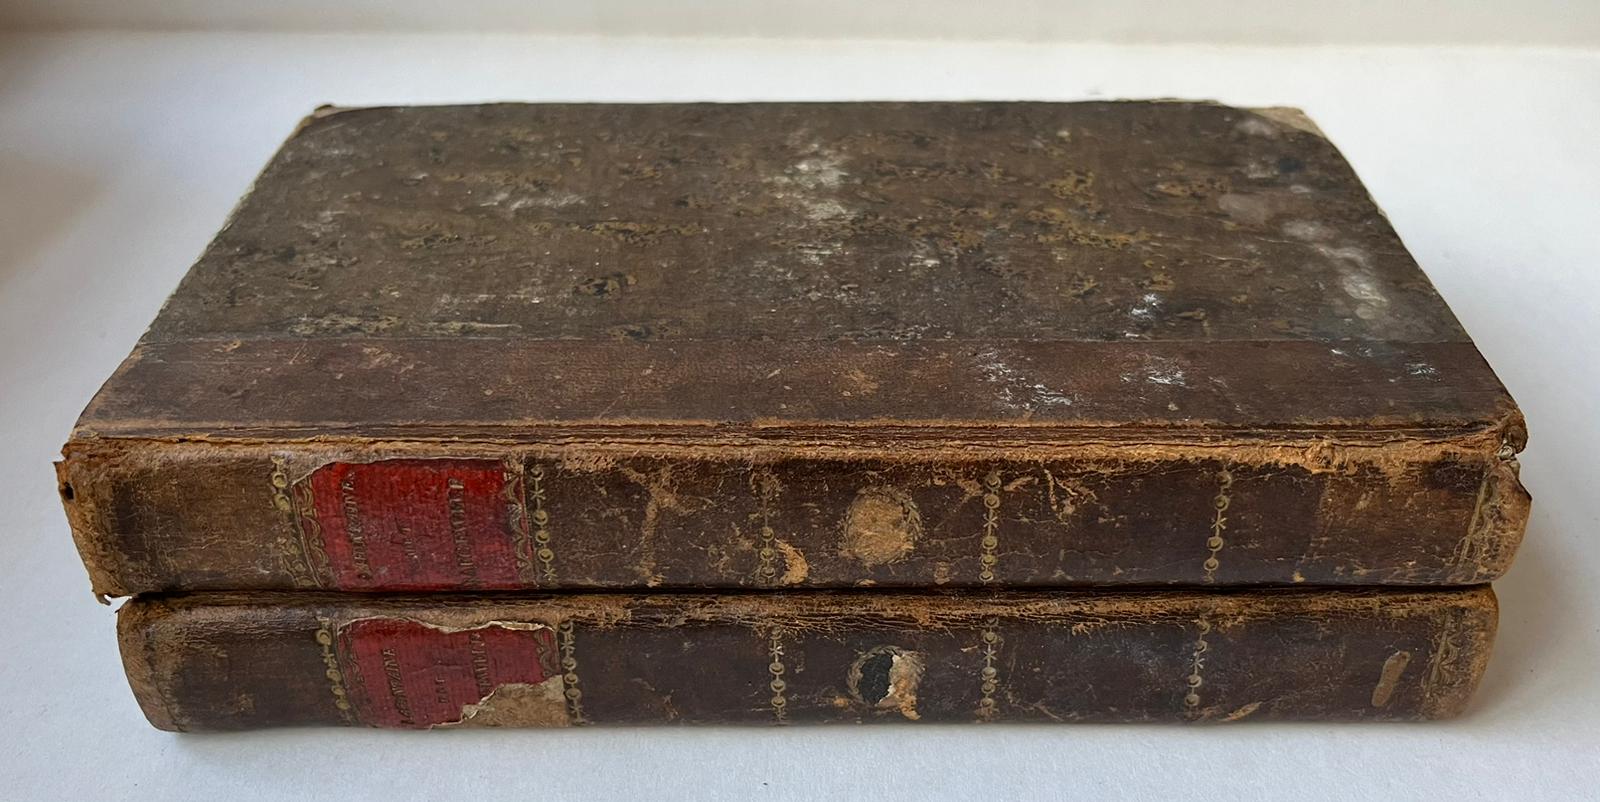 [Literature 1817-1818] Agatha, of Het grafgewelf. Vertaald uit het Duits. Leiden, A. & J. Honkoop, 1817-1818, [2 vols.], 350, 370 pp.